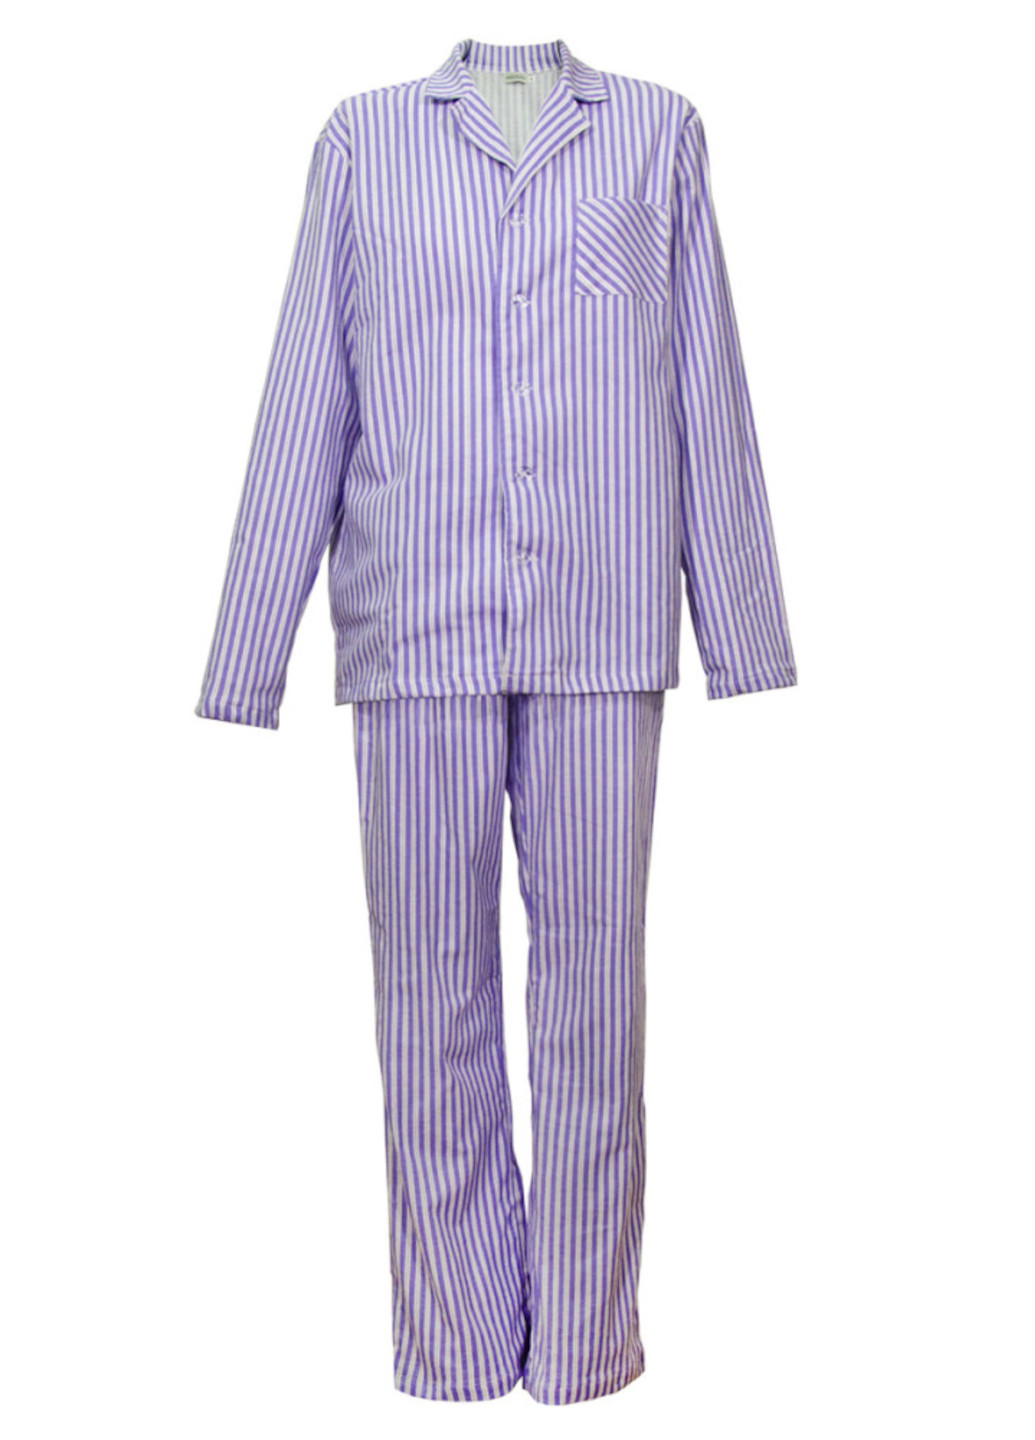 Голубая всесезон пижама фланель ф-127 рубашка + брюки Ярослав